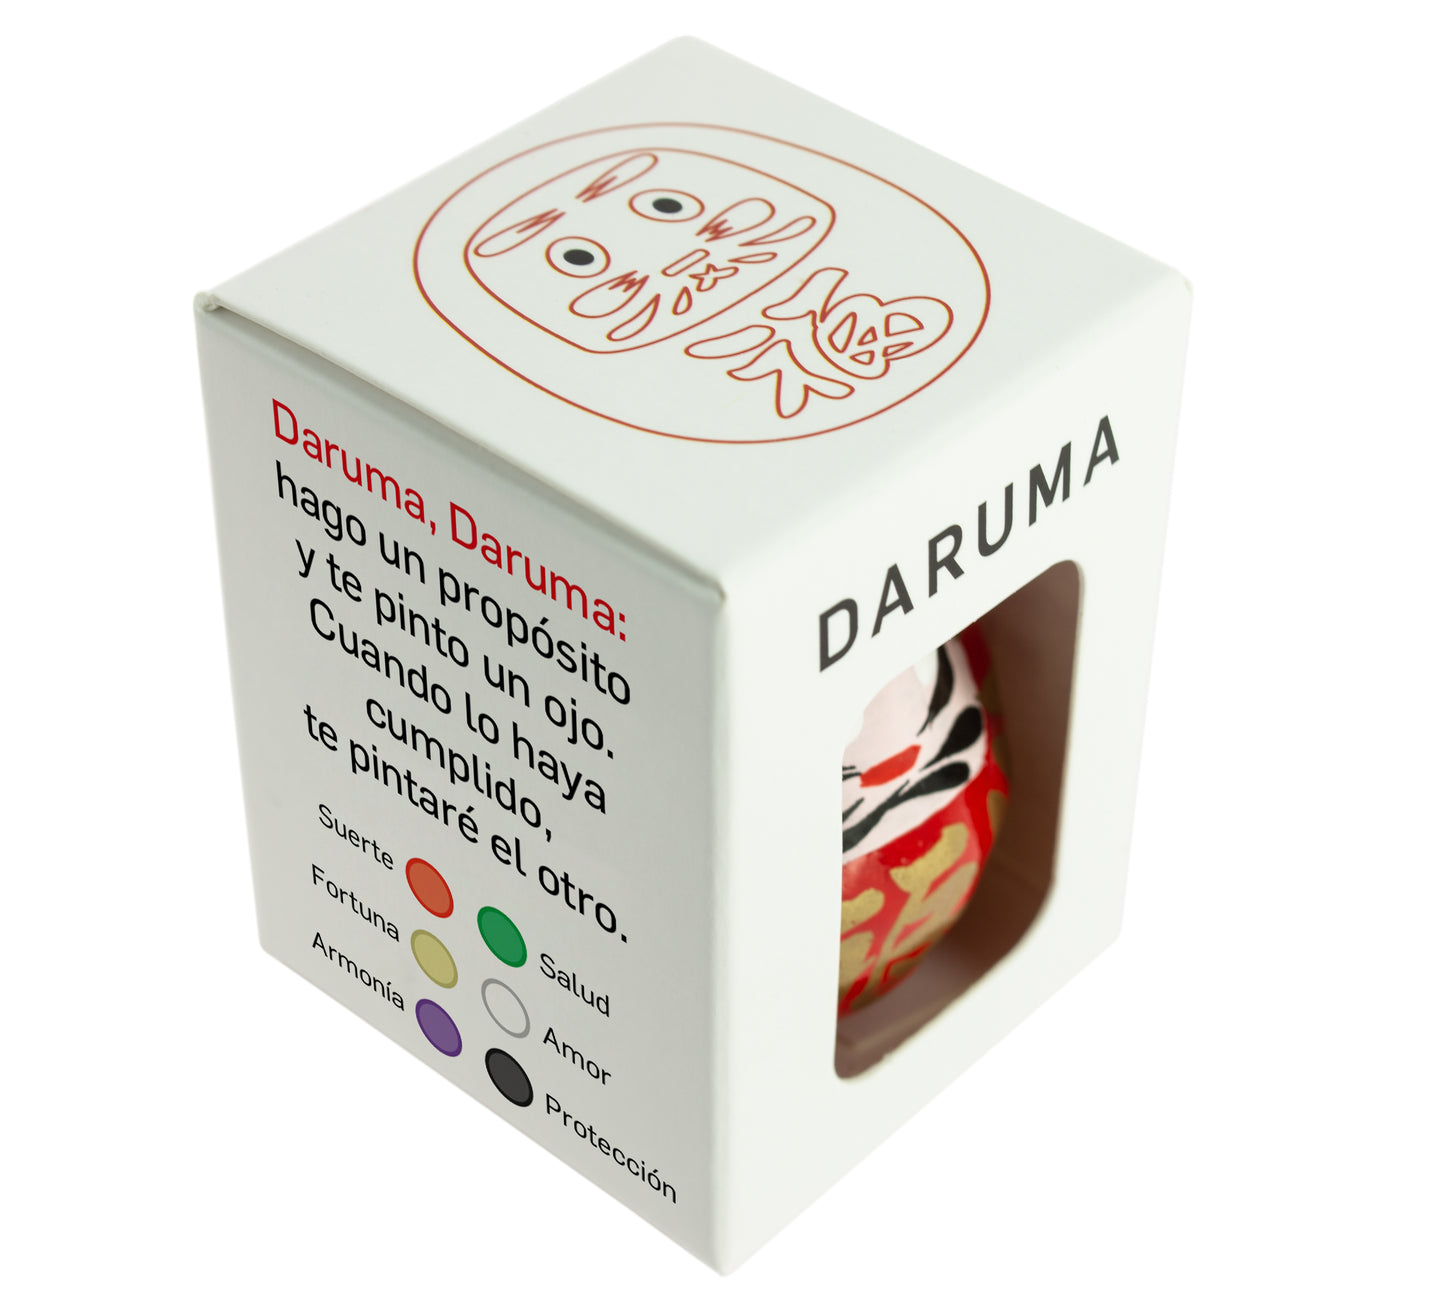 Red Daruma - Good Fortune, Small